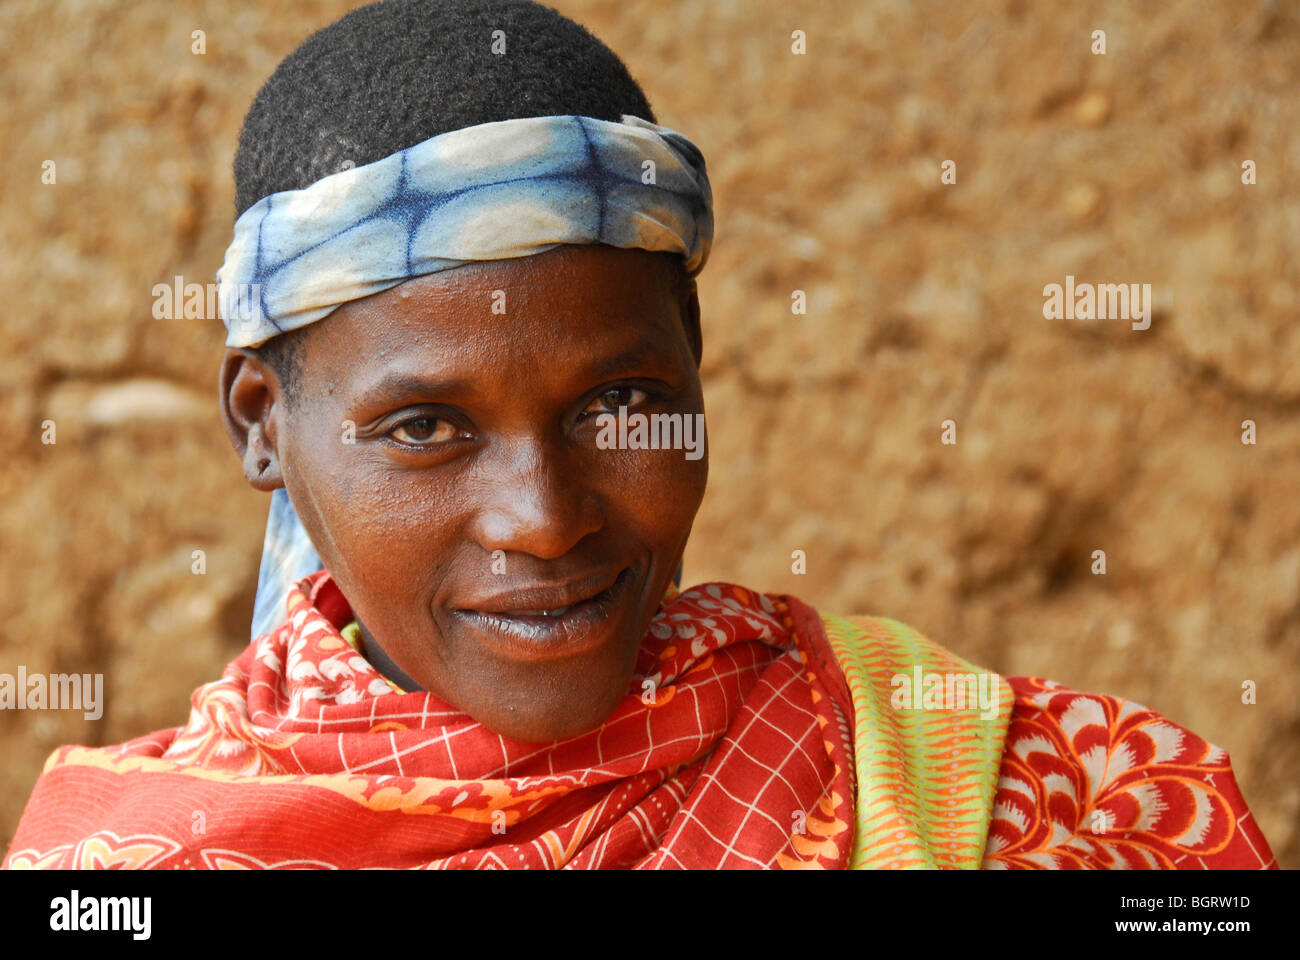 Me'en woman of southwest Ethiopia Stock Photo